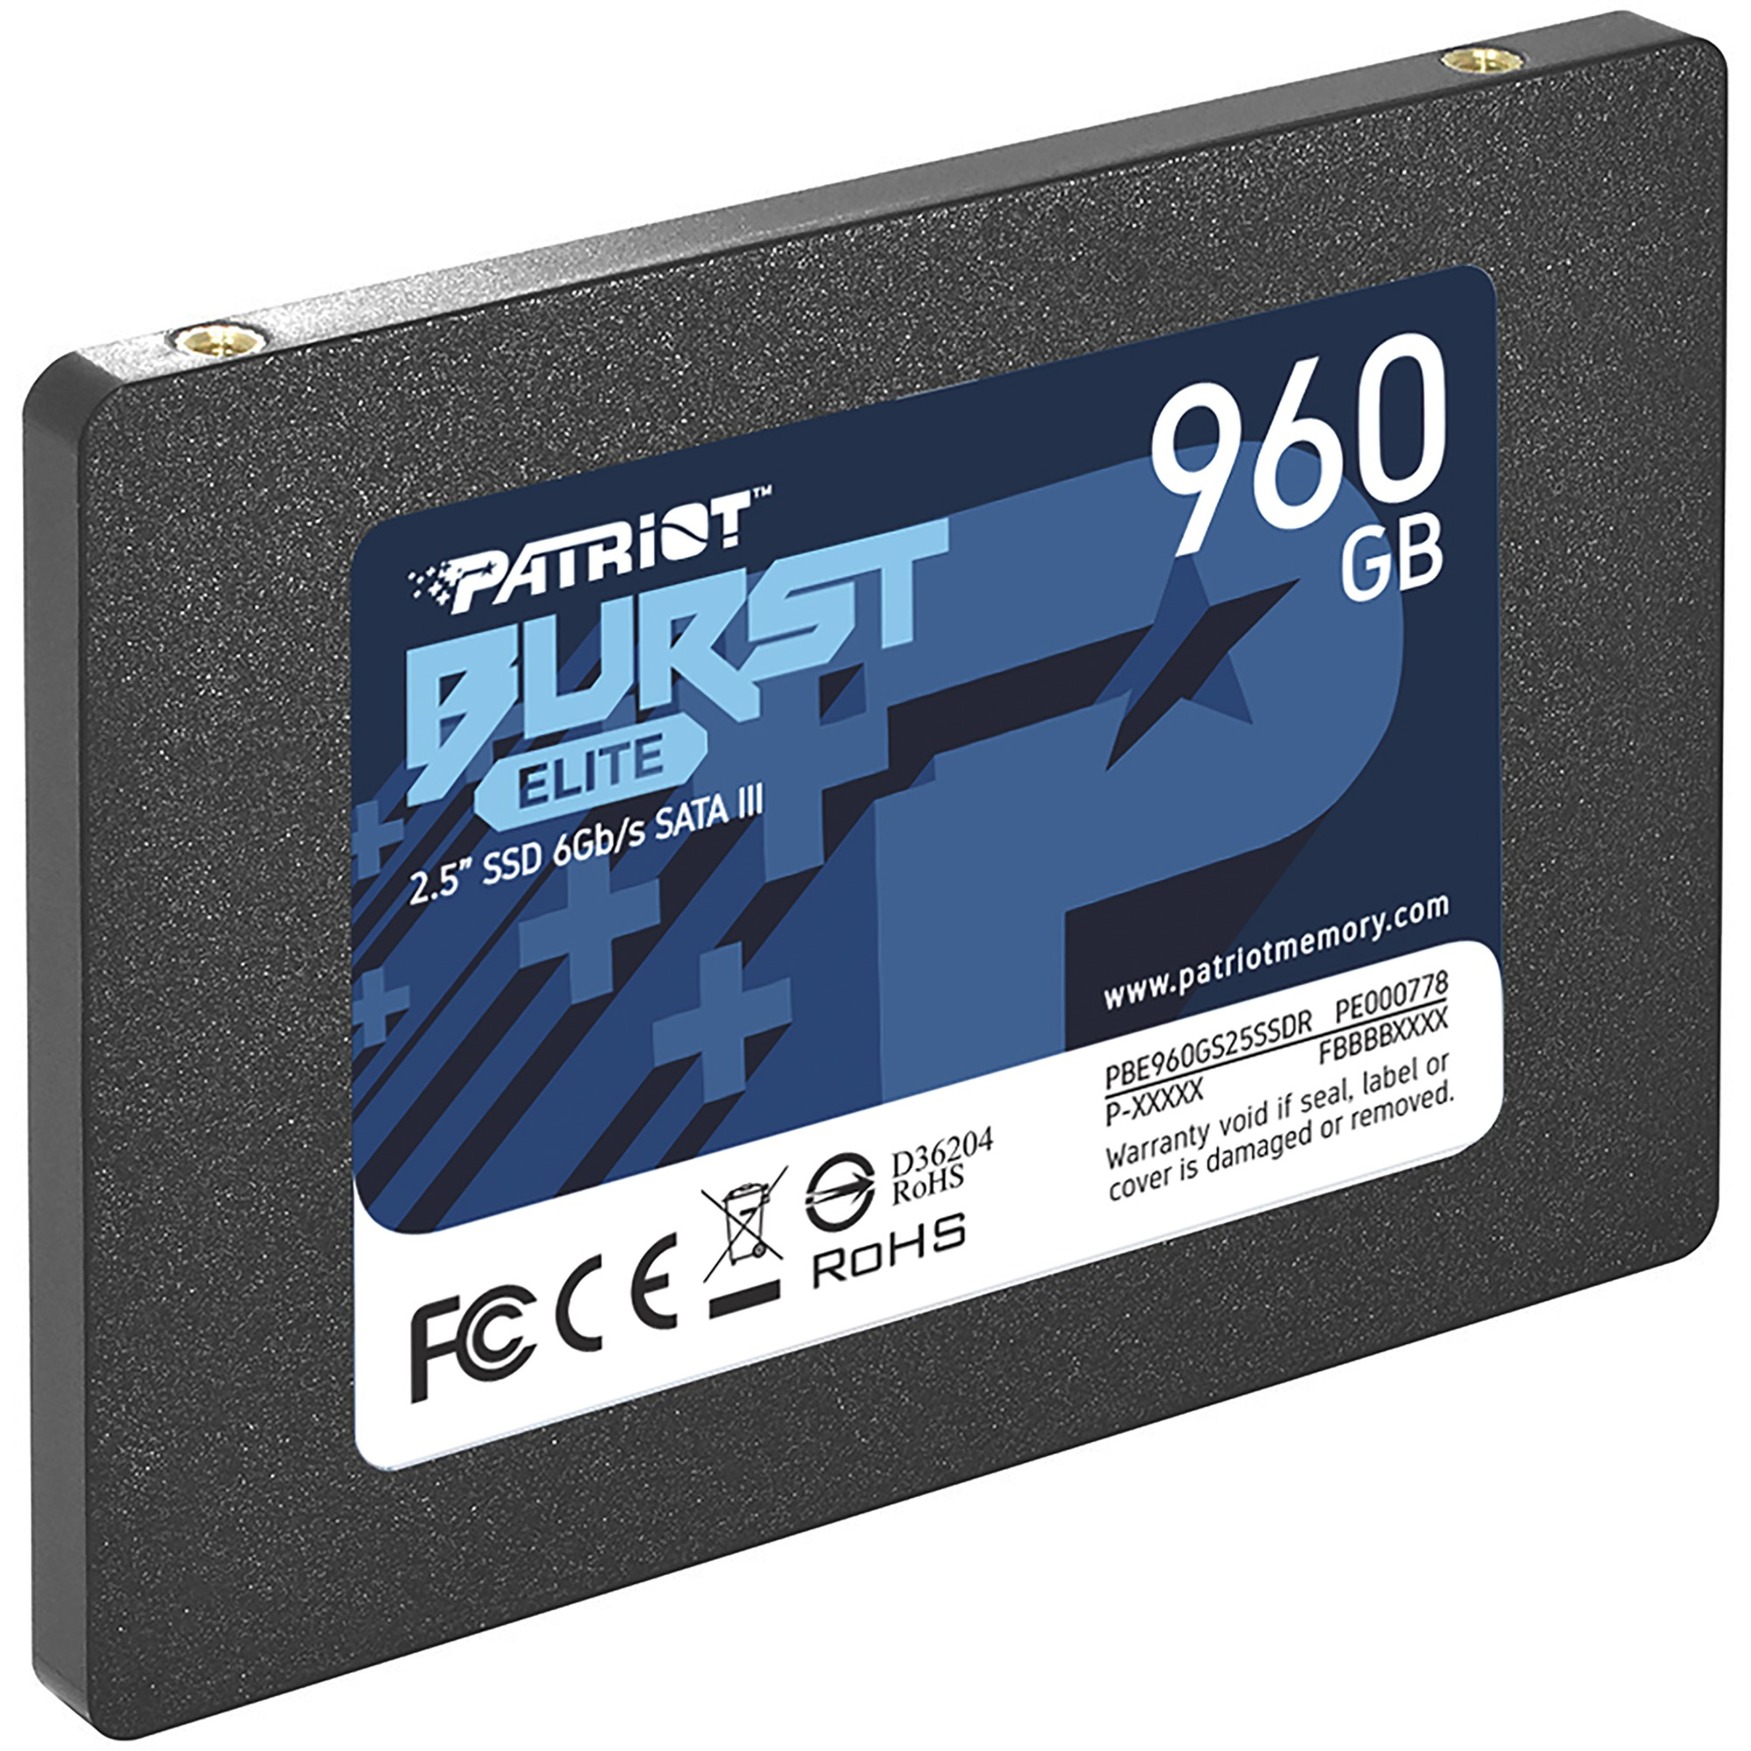 Burst Elite 960 GB, SSD von Patriot